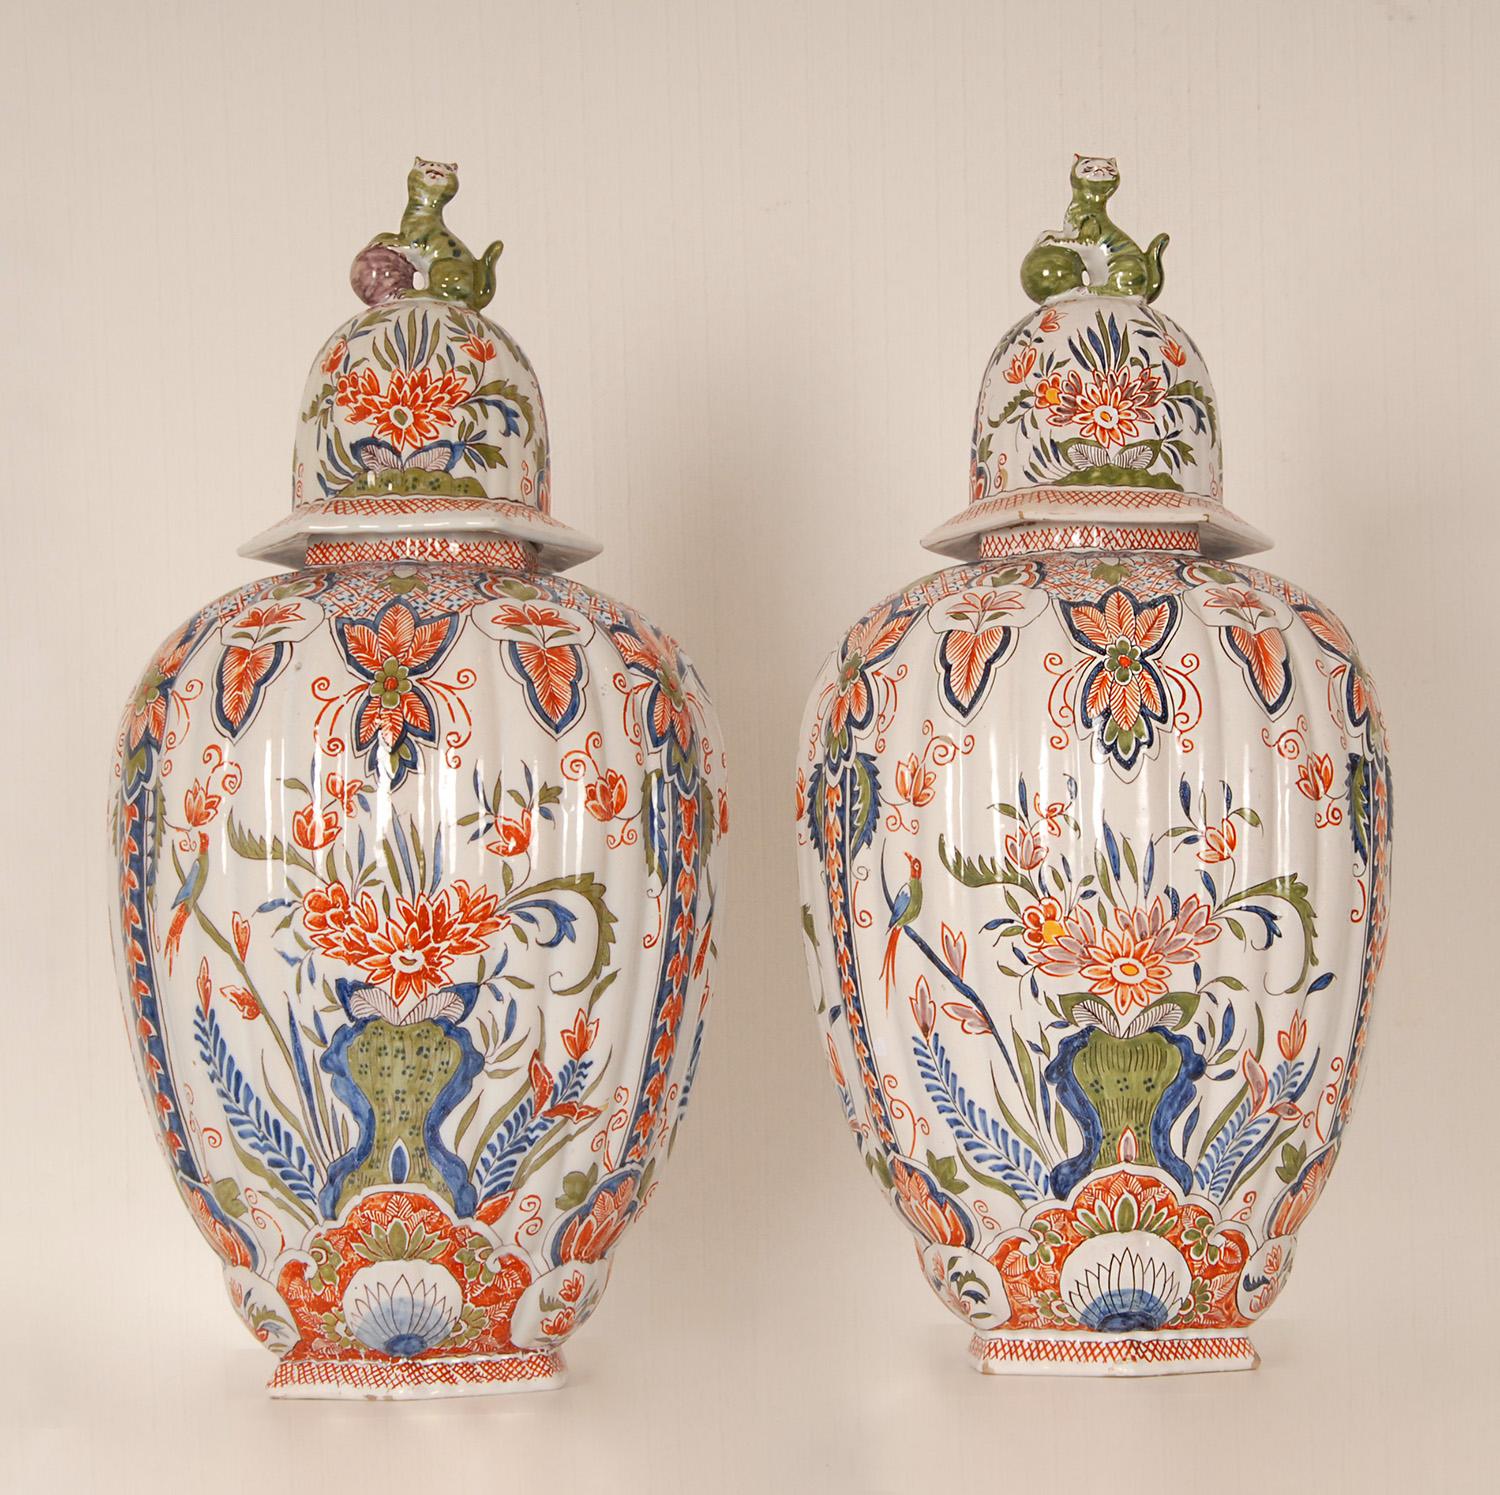 Ein Paar antike Vasen aus Delft - Bedeckte Delfter Urnen.
Hohe, dekorative Balustervasen auf achteckigem Fuß.
Eiförmiger Korpus mit vier länglichen Tafeln, bemalt in Blau, Eisenrot und Grün mit verschiedenen Szenen von exotischen Vögeln auf